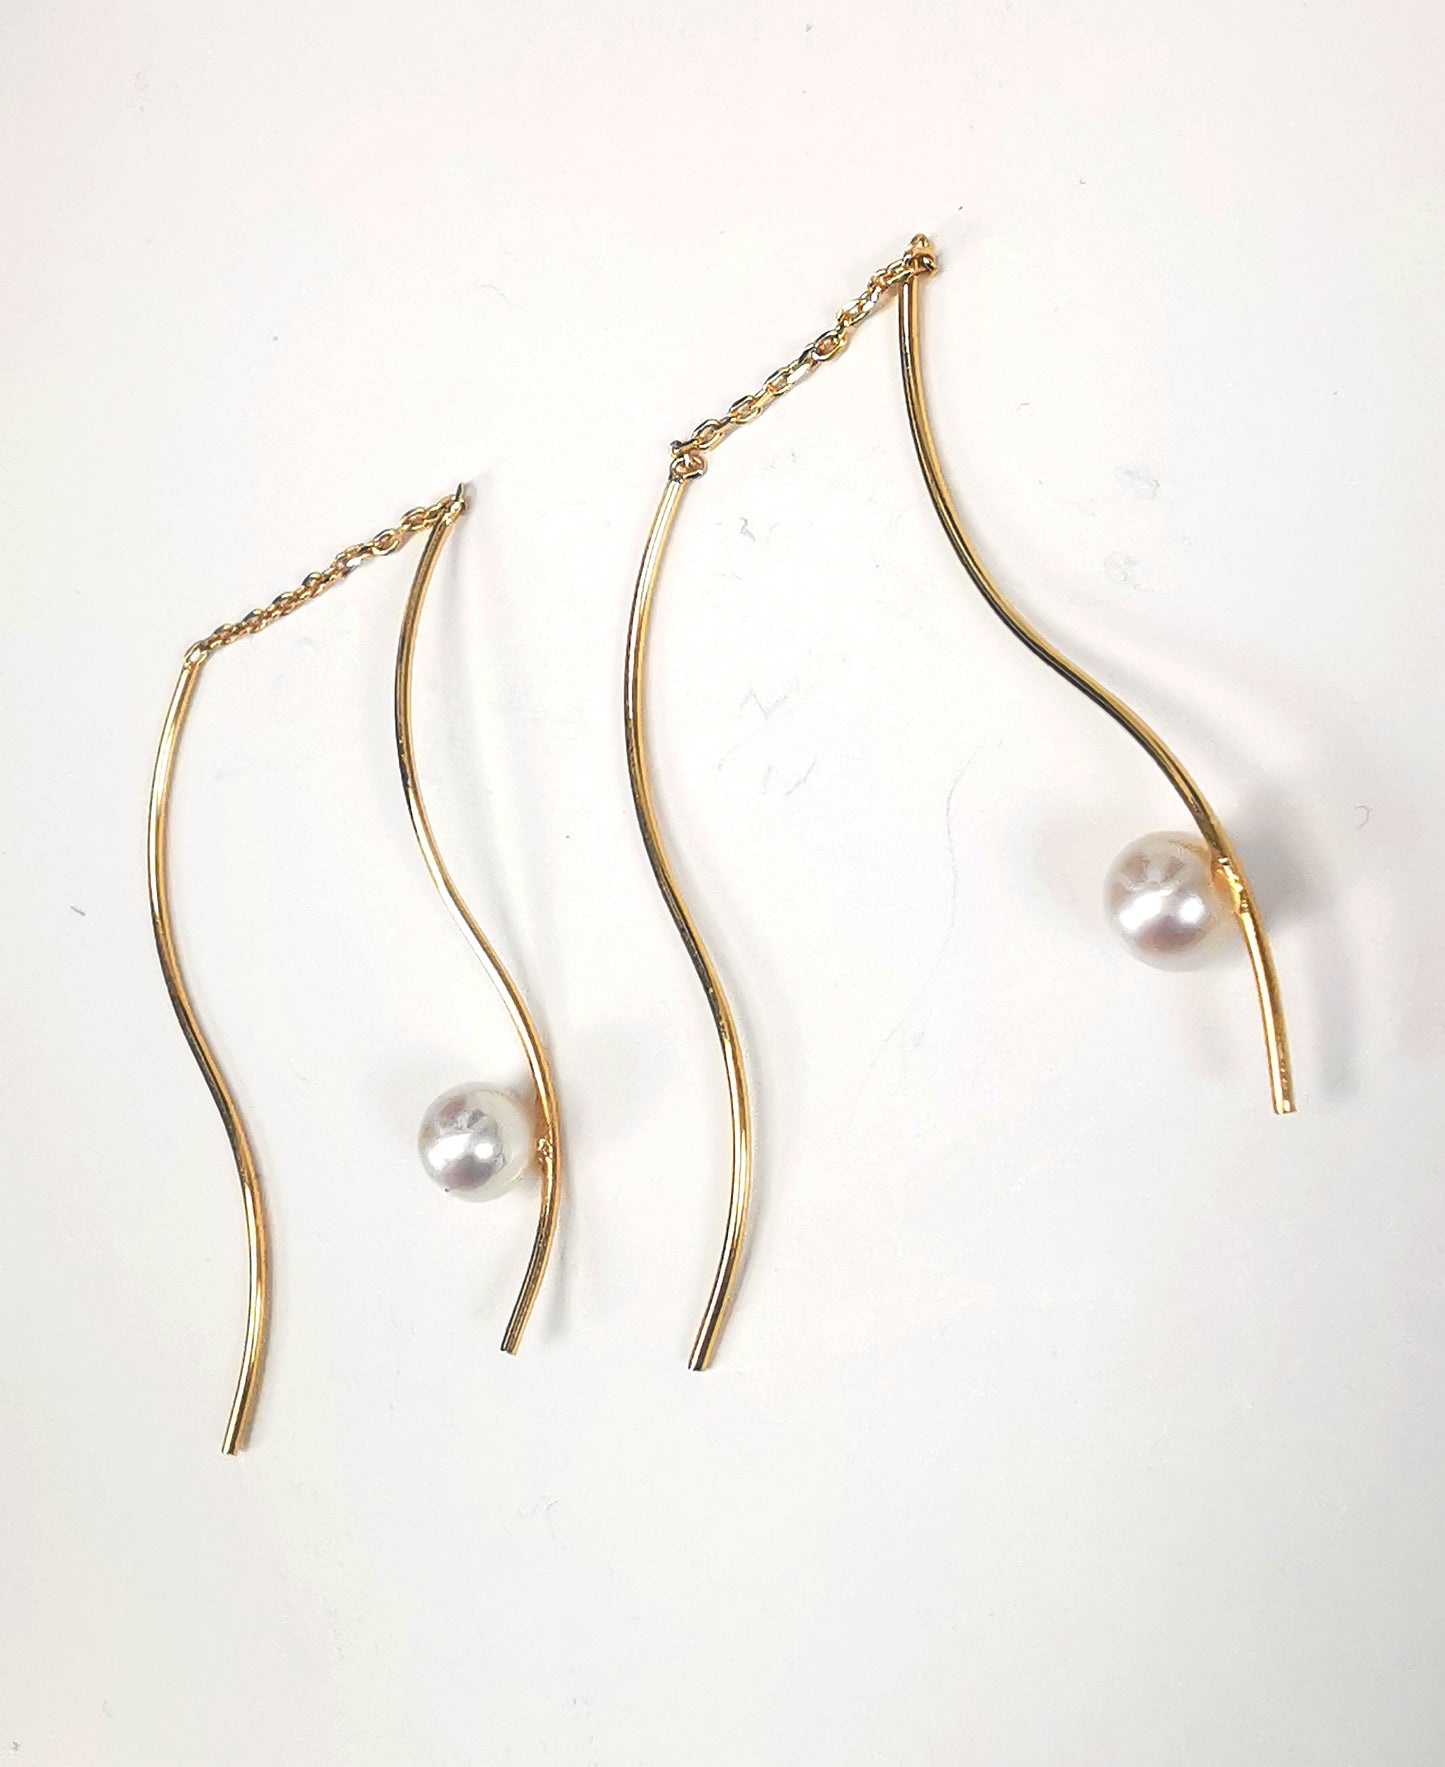 Boucles d'oreilles perles de culture blanches rondes 5mm sur pendants plaqués or. Les pendants sont constitués de deux "s" longs de 45mm reliés par 15mm de chaine. Sur un des 2 "s", la perle est montée perpendiculairement, à 8mm du bas. Présentées cote à cote, perle en bas, tournées vers la gauche, la boucle de droite décalée vers le haut, posées sur fond blanc. Vue de dessus.